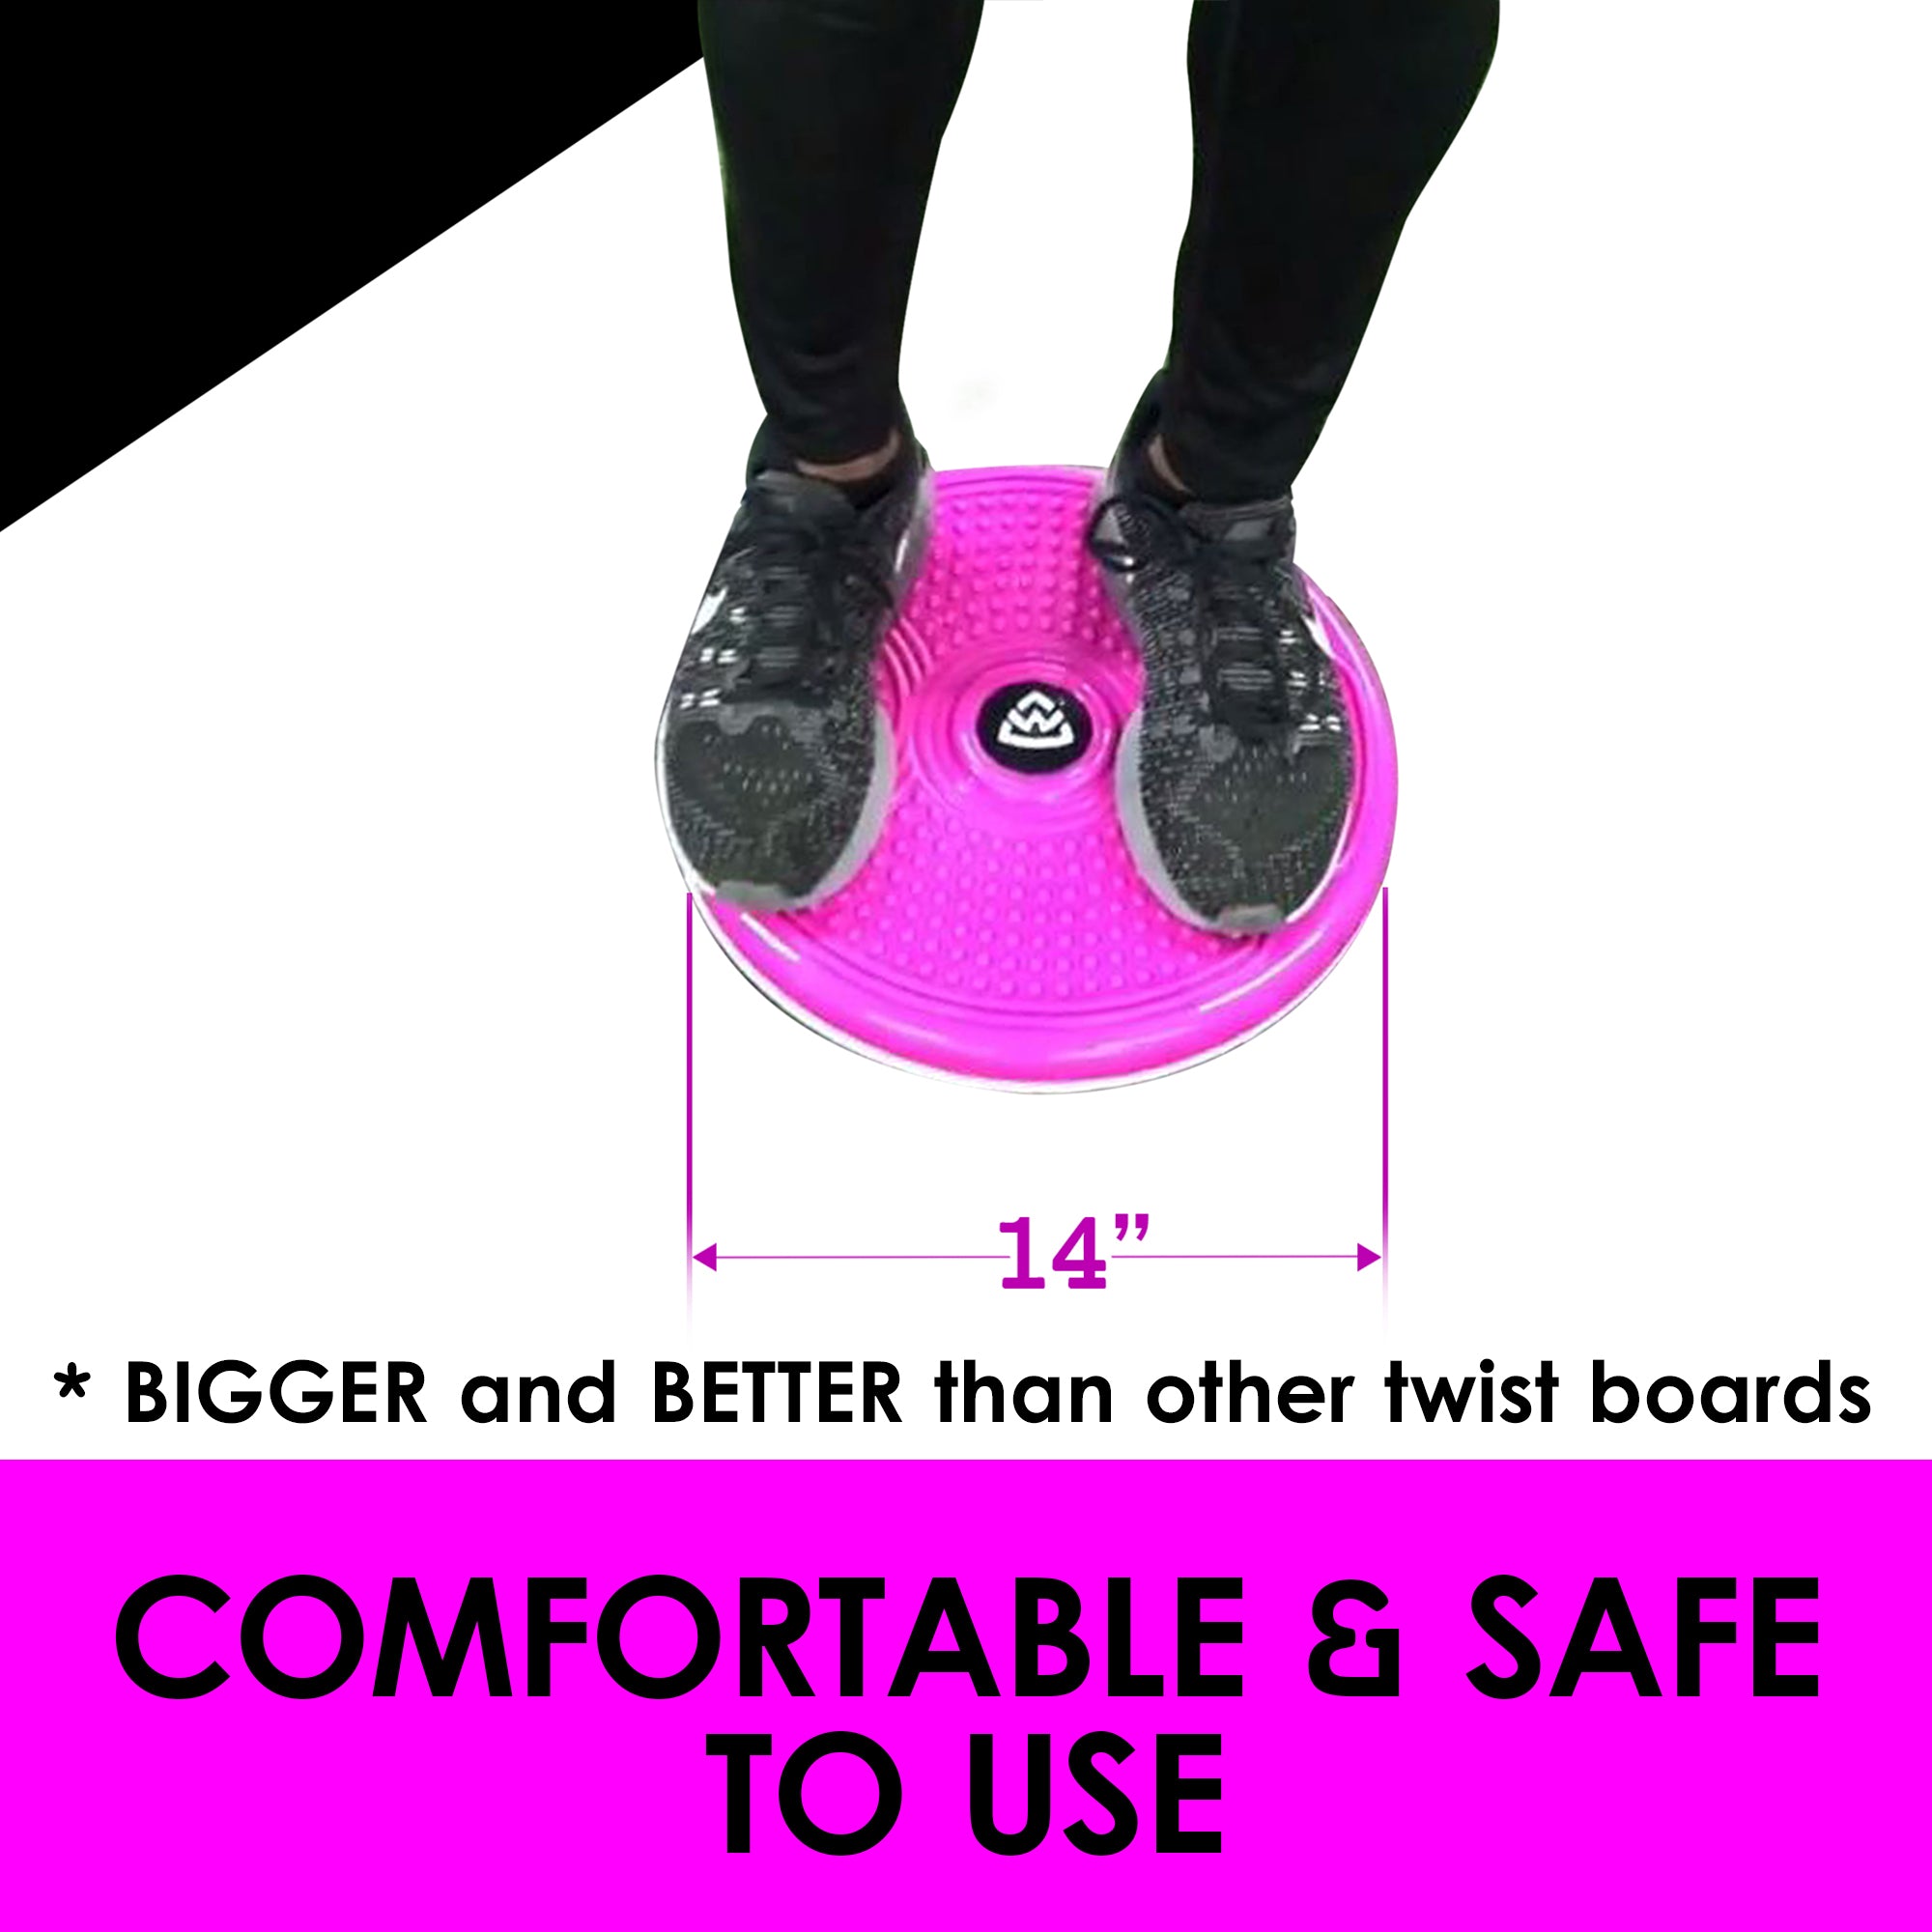 Stomach Waist Trainer Twist Board Machine - Pink Large 10 inch